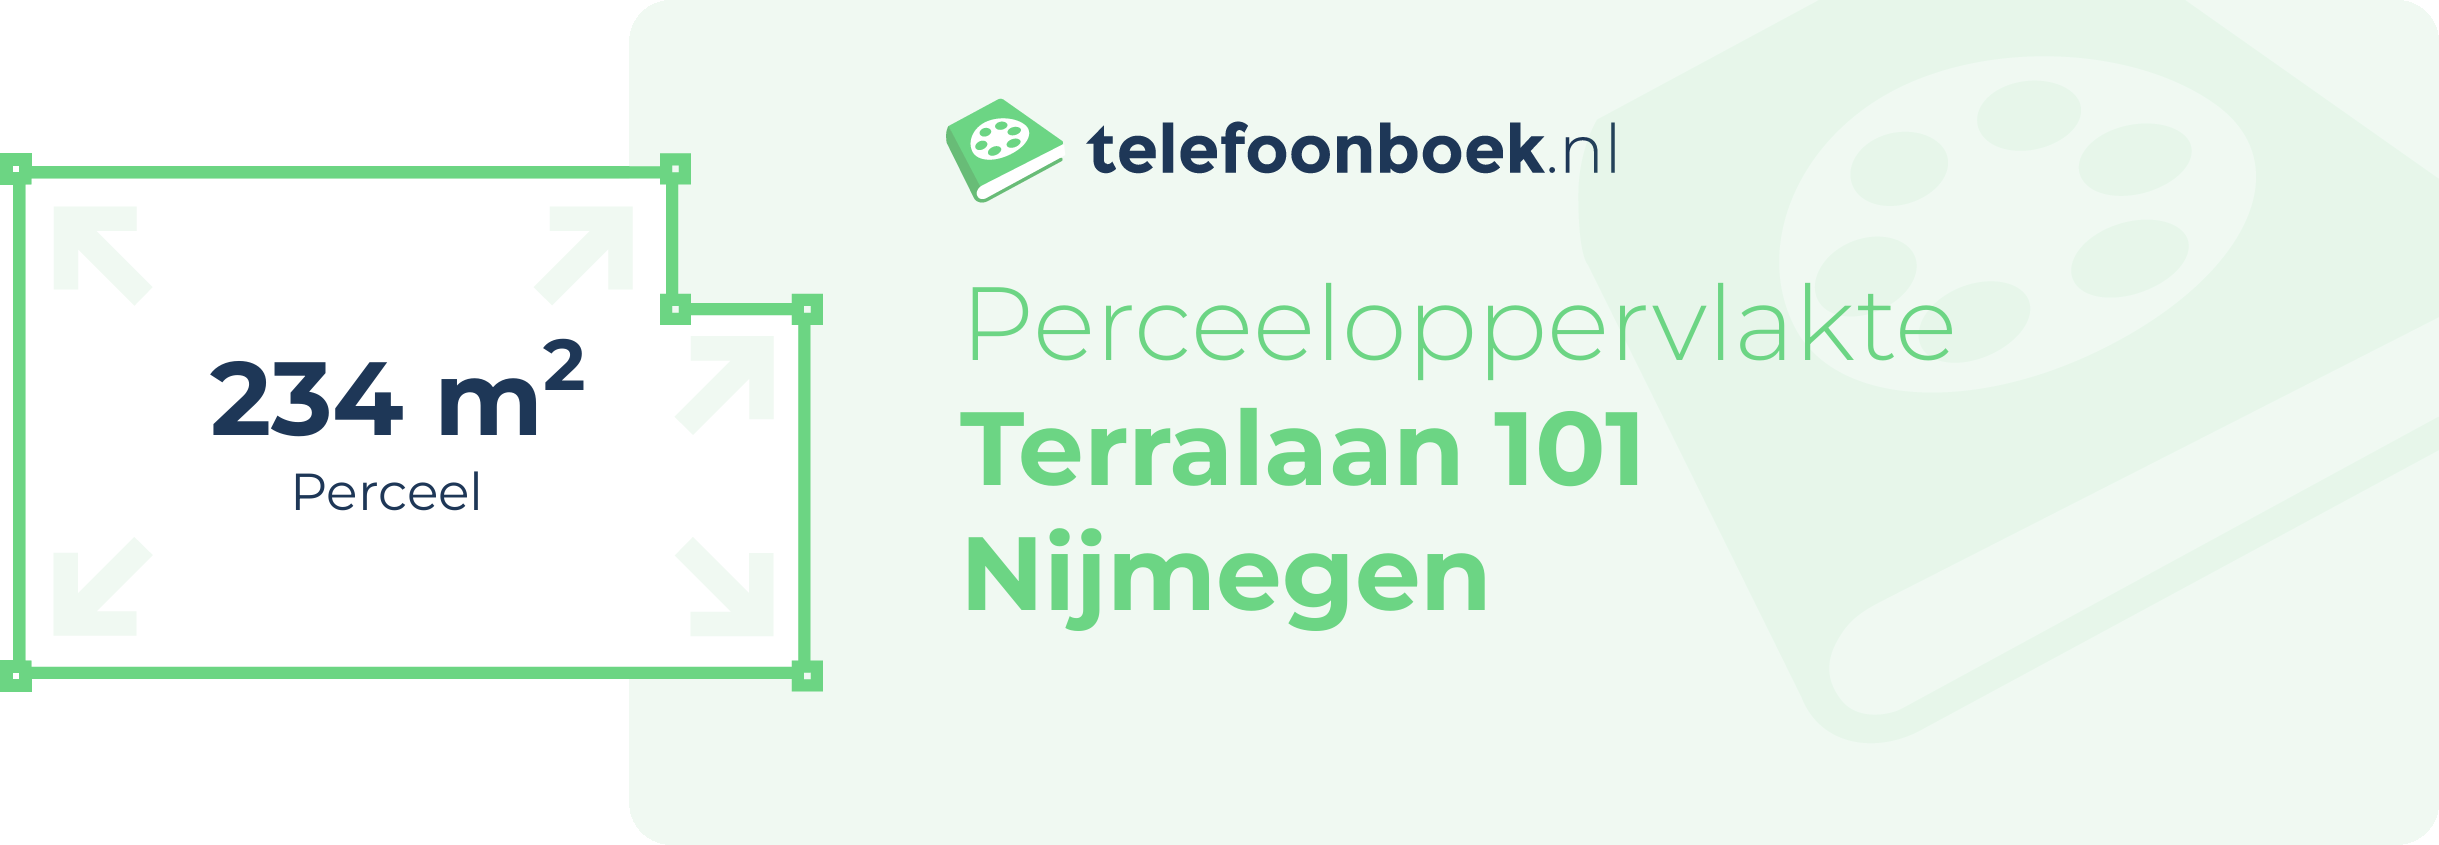 Perceeloppervlakte Terralaan 101 Nijmegen